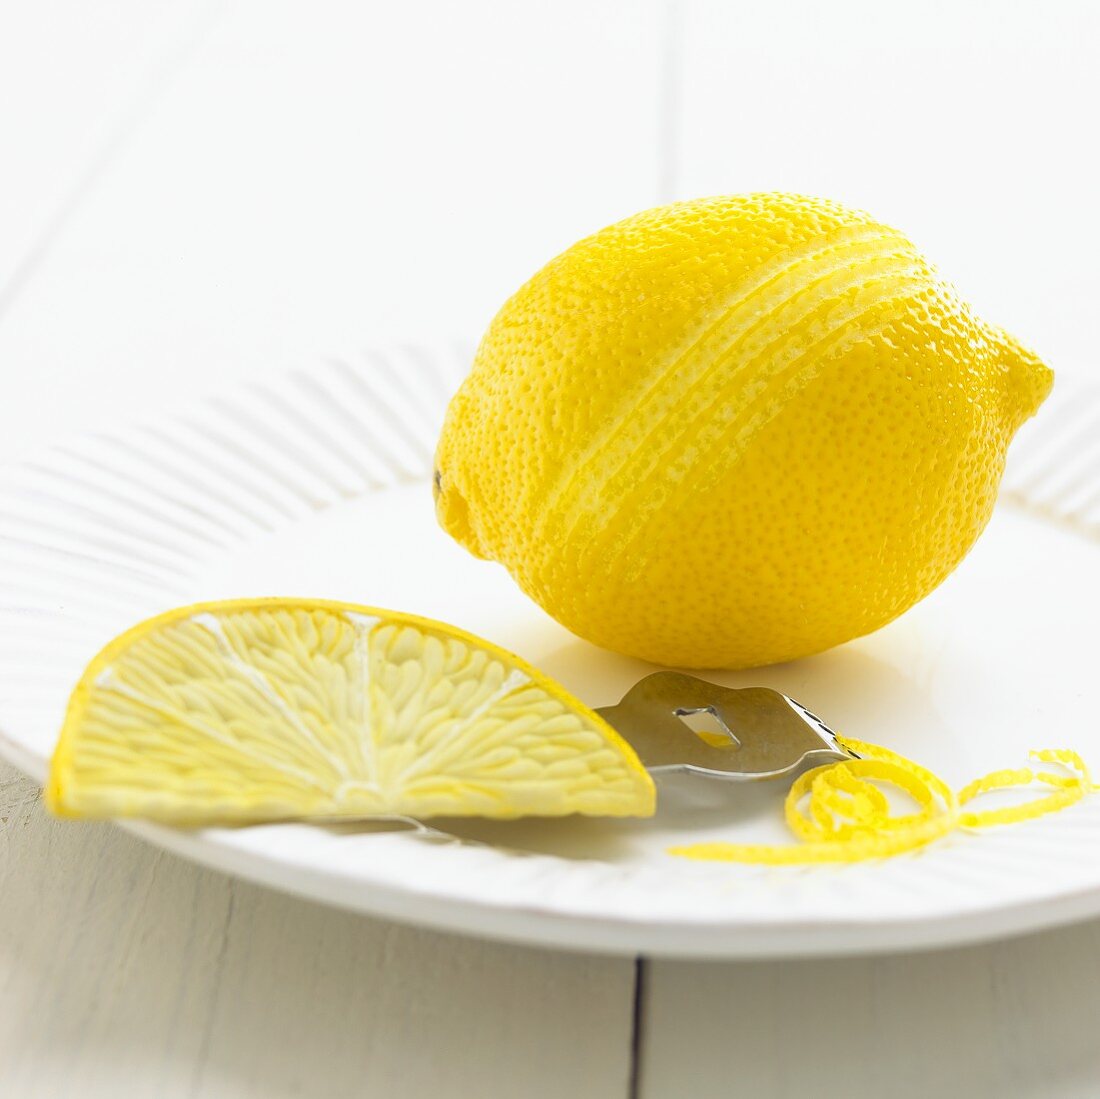 Zitrone und Zestenreisser